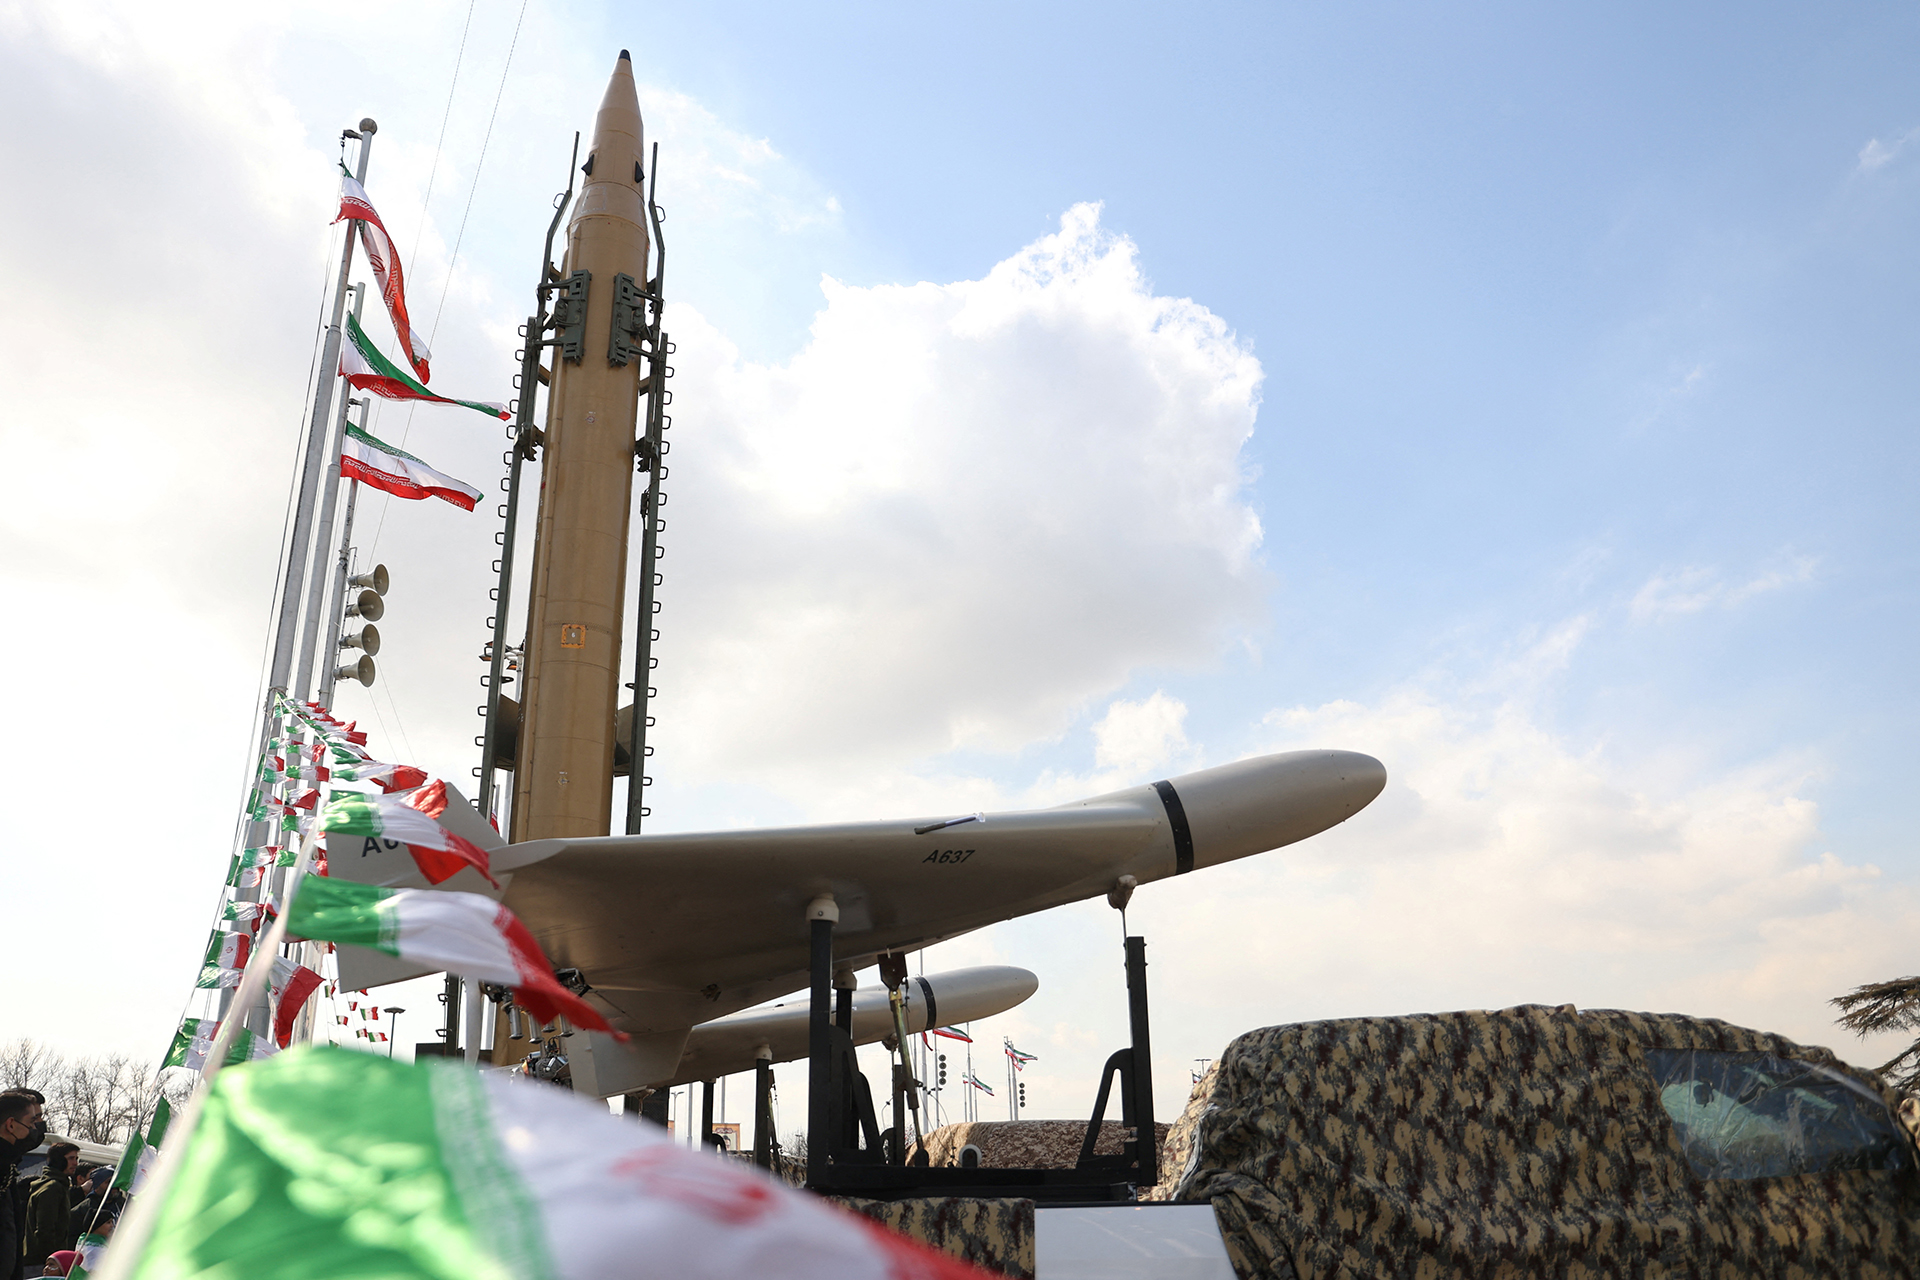 عقوبات أميركية جديدة ضد برامج تصنيع السلاح بإيران | أخبار – البوكس نيوز